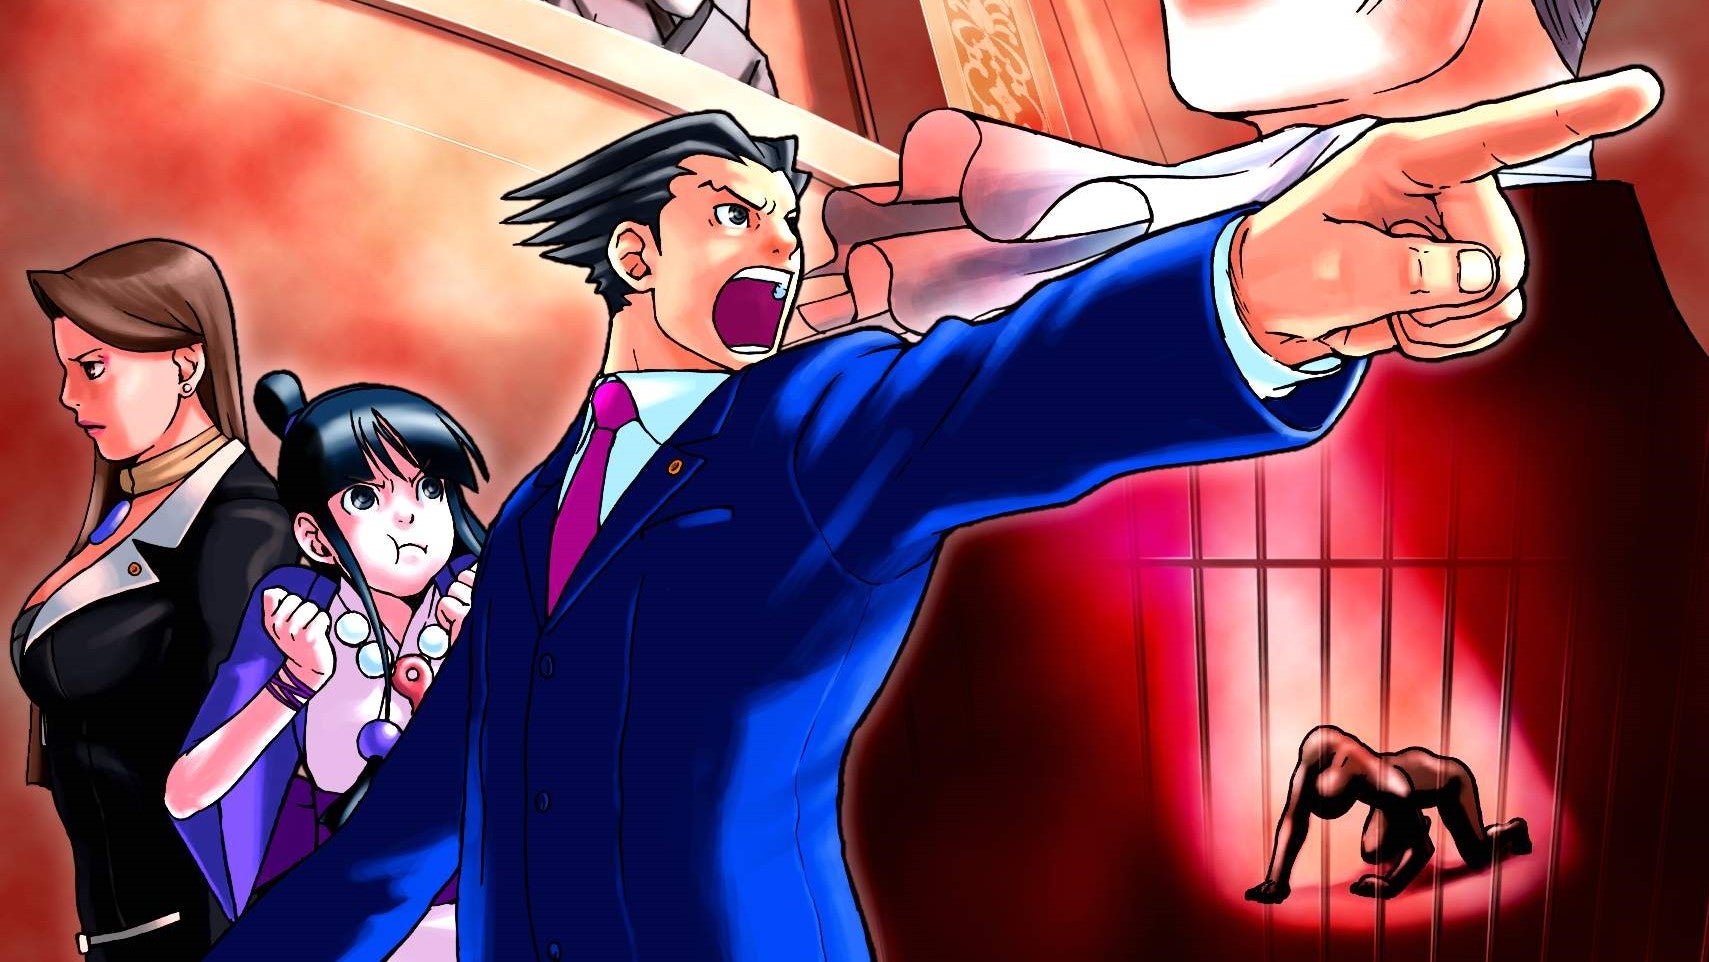 Bilder zu Ace Attorney: Capcom überarbeitet die ersten drei Spiele für mobile Geräte